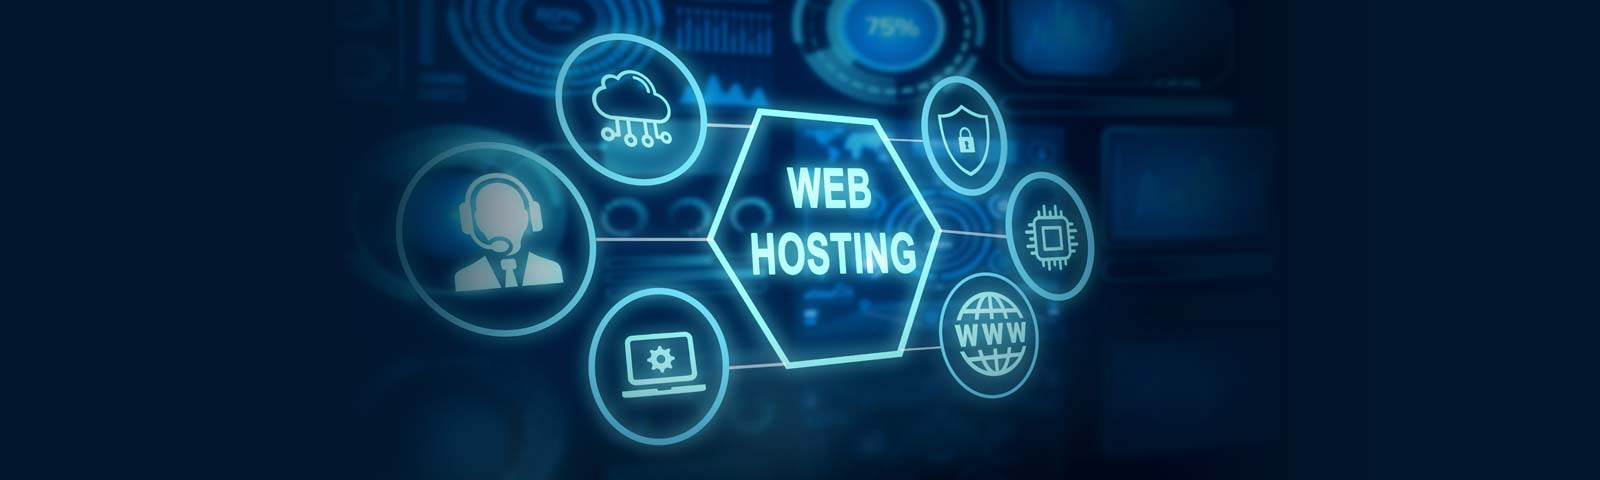 Requisitos mínimos para un hosting web